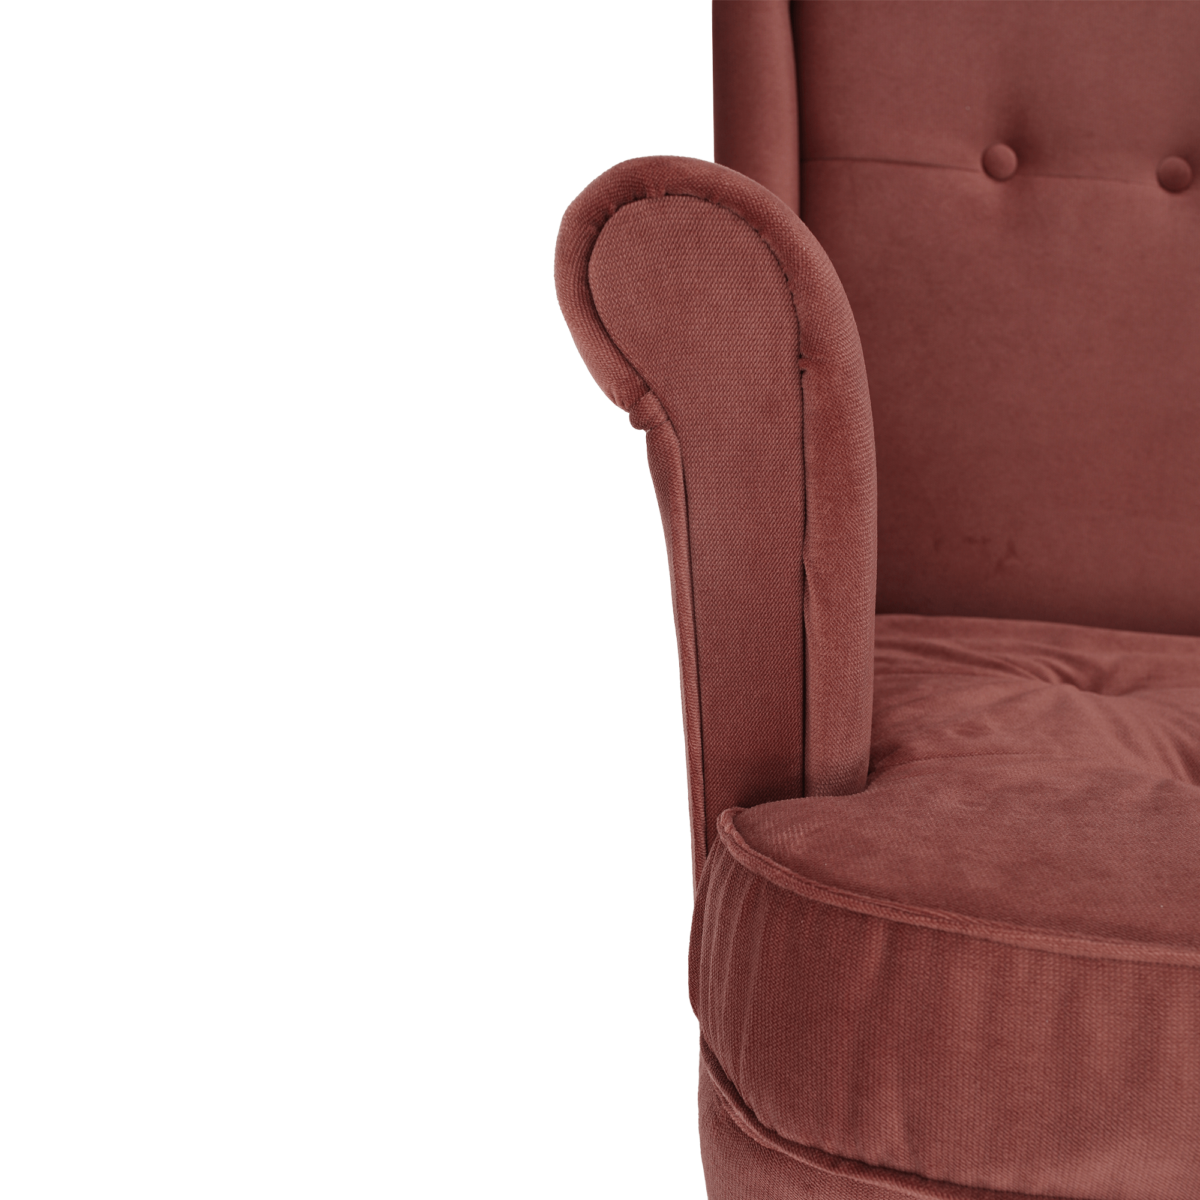 Füles fotel, vén rózsaszín/dió, RUFINO 2 NEW